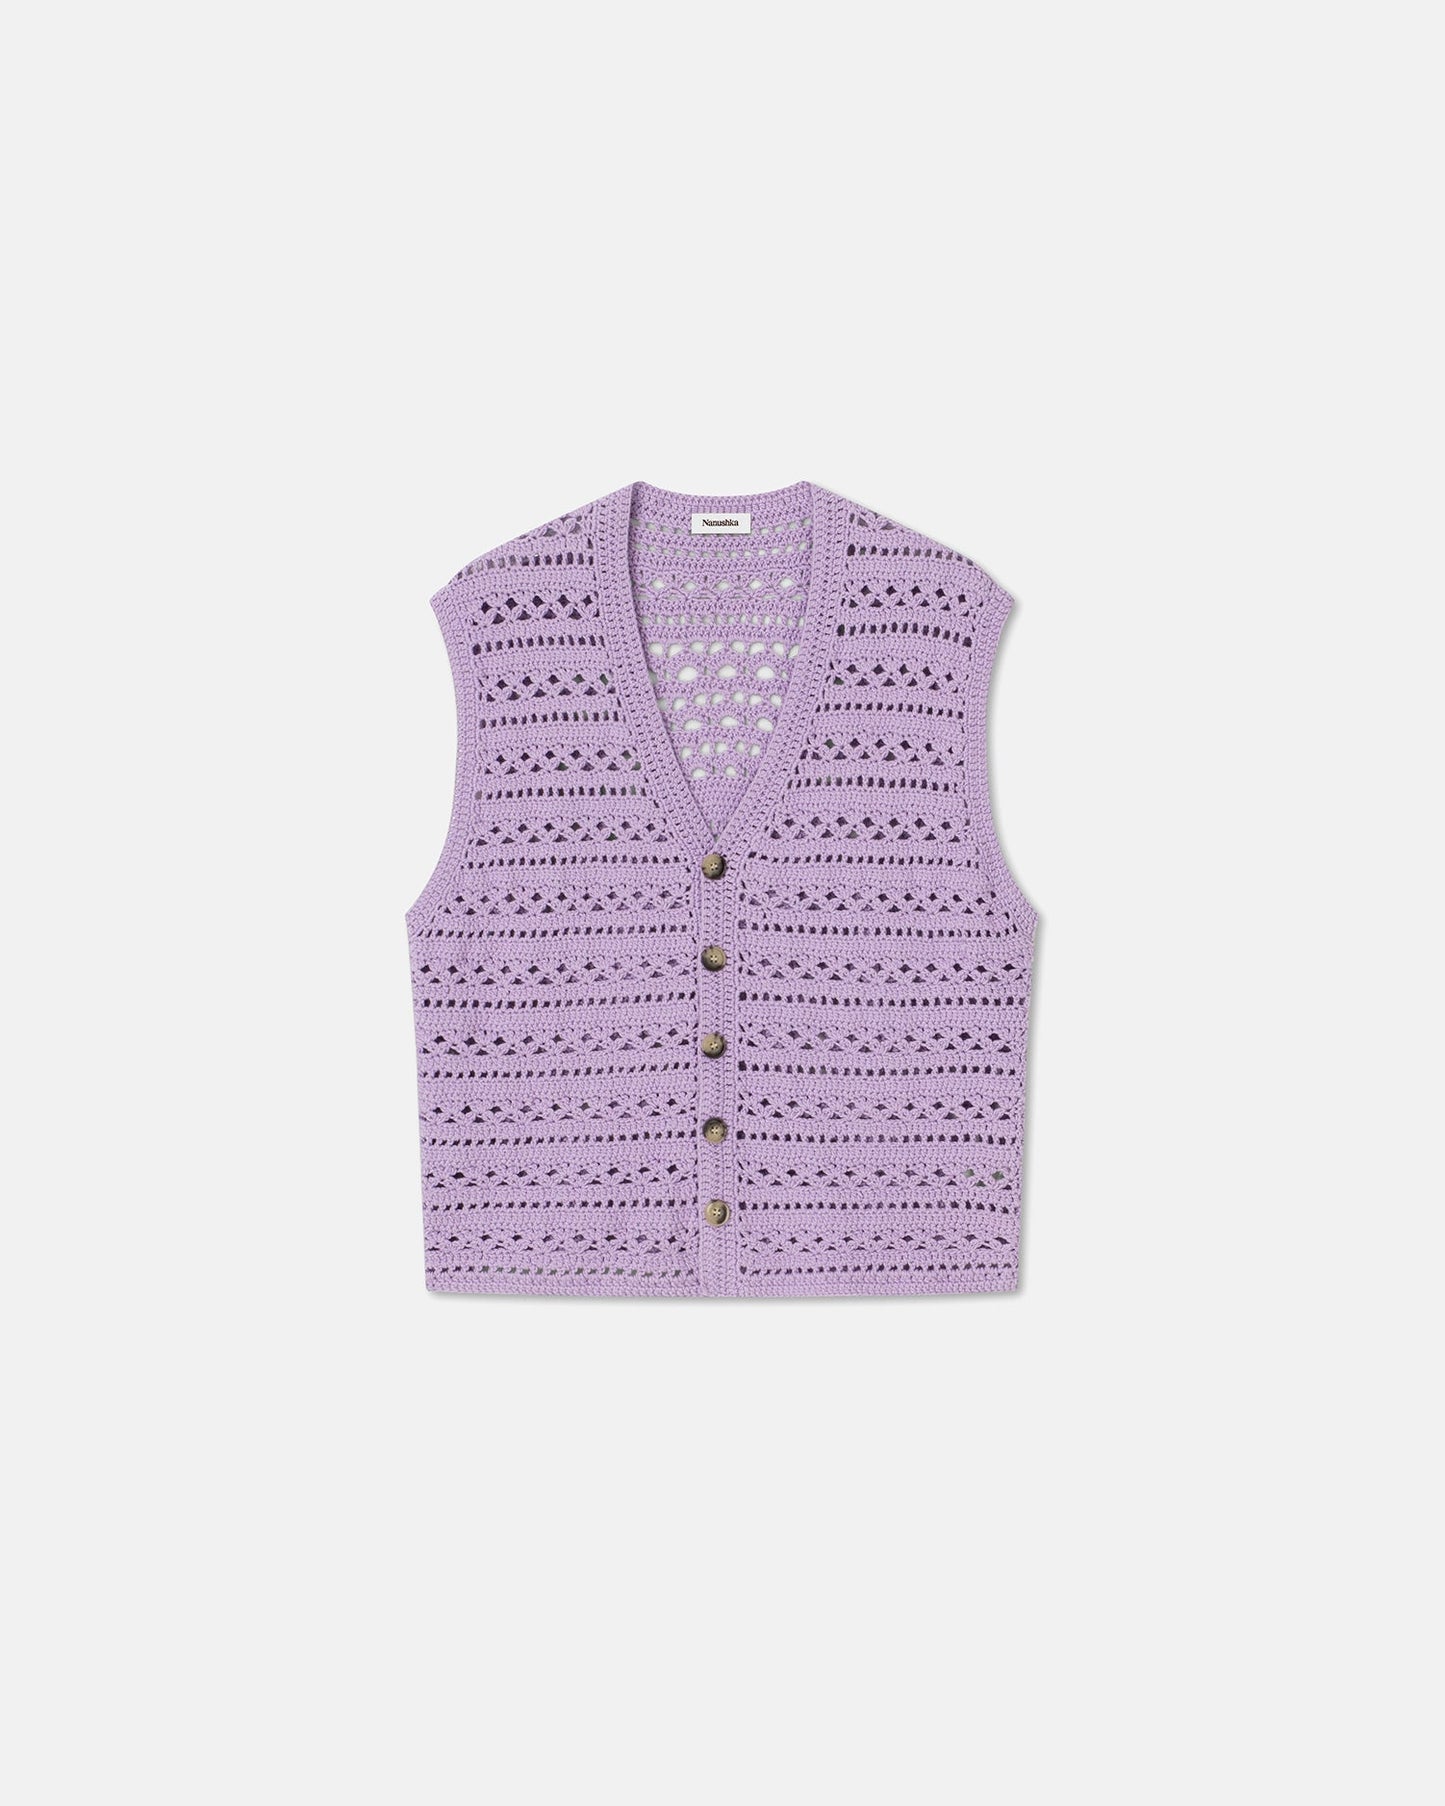 Andor - Archive Crochet-Knit Vest - Lilac